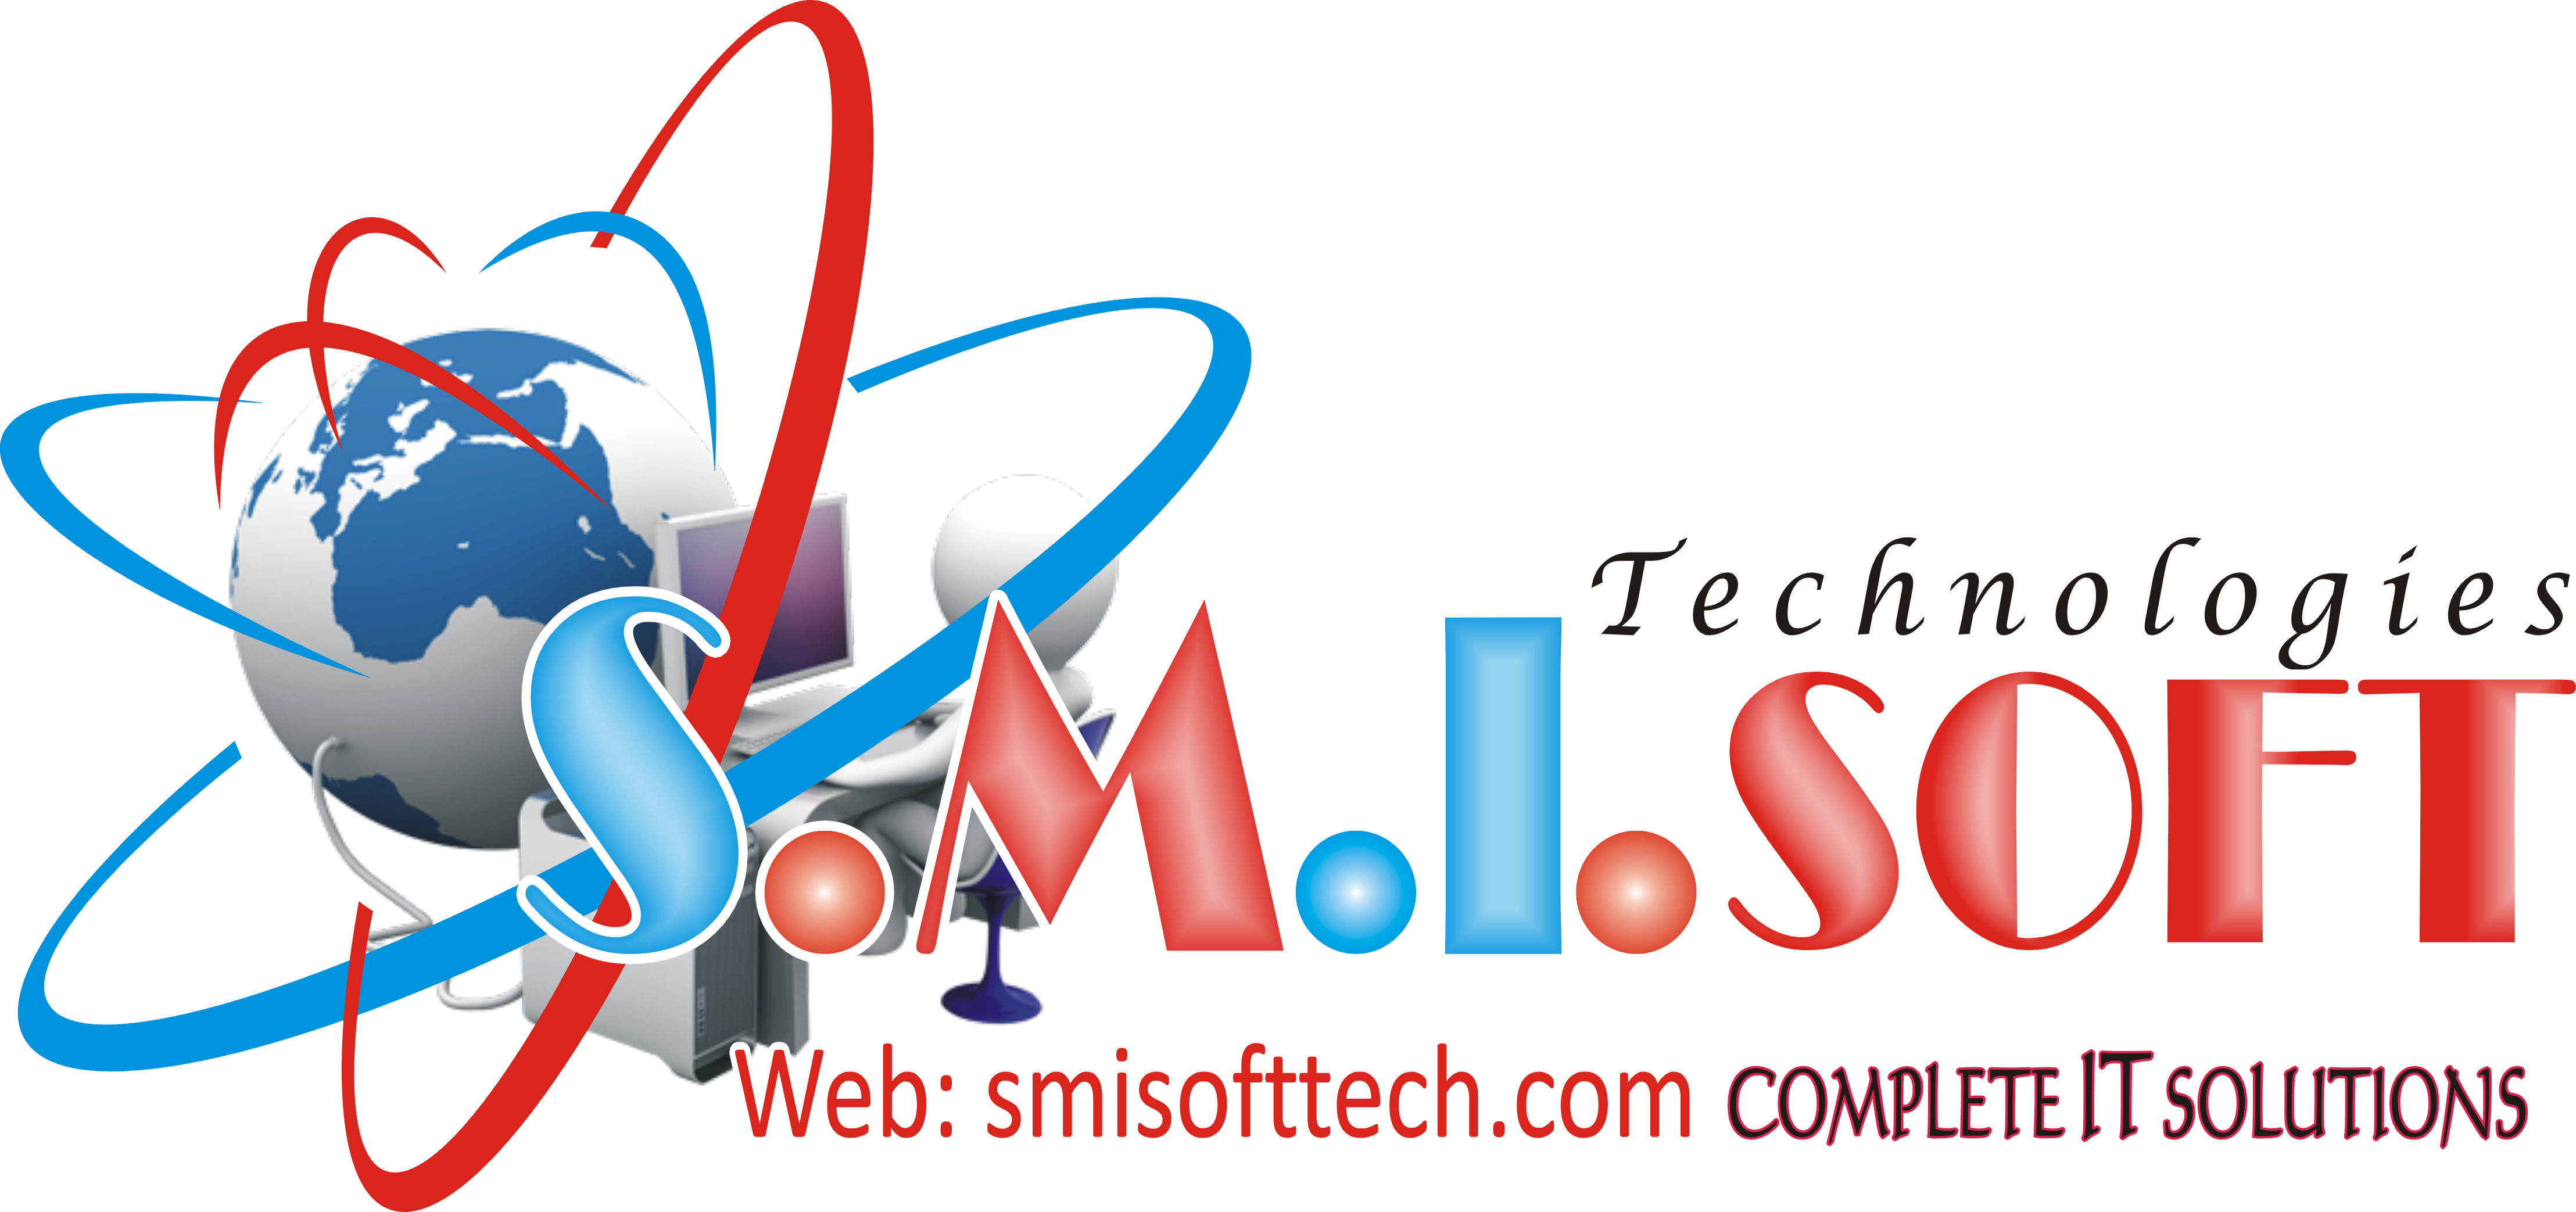 SMI SOFT Technologies